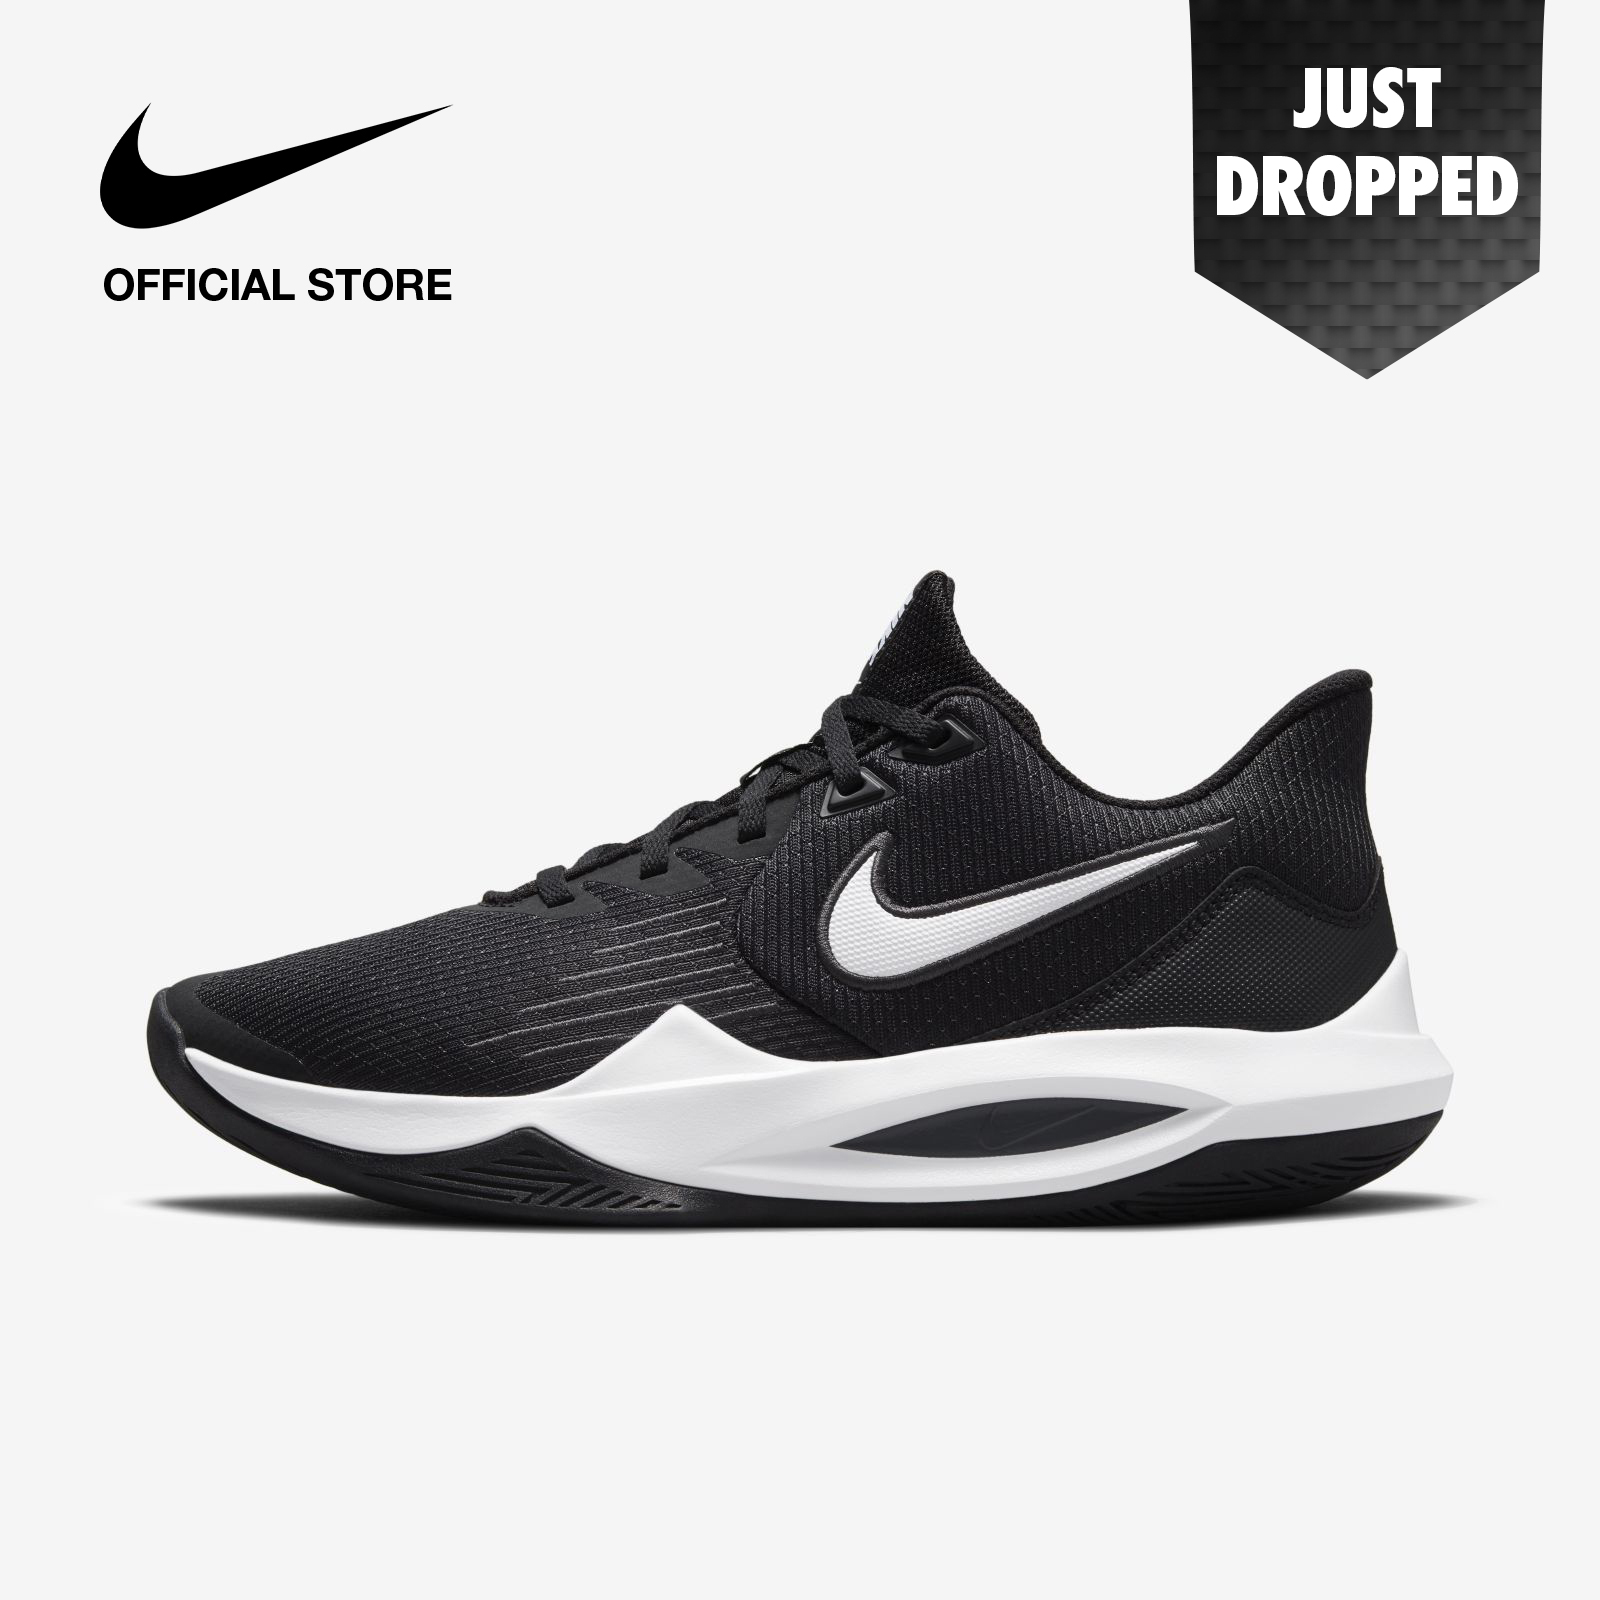 Nike Men's Precision 5 Basketball Shoes - Black ไนกี้ รองเท้าบาสเก็ตบอลผู้ชาย พรีซิชั่น 5 - สีดำ